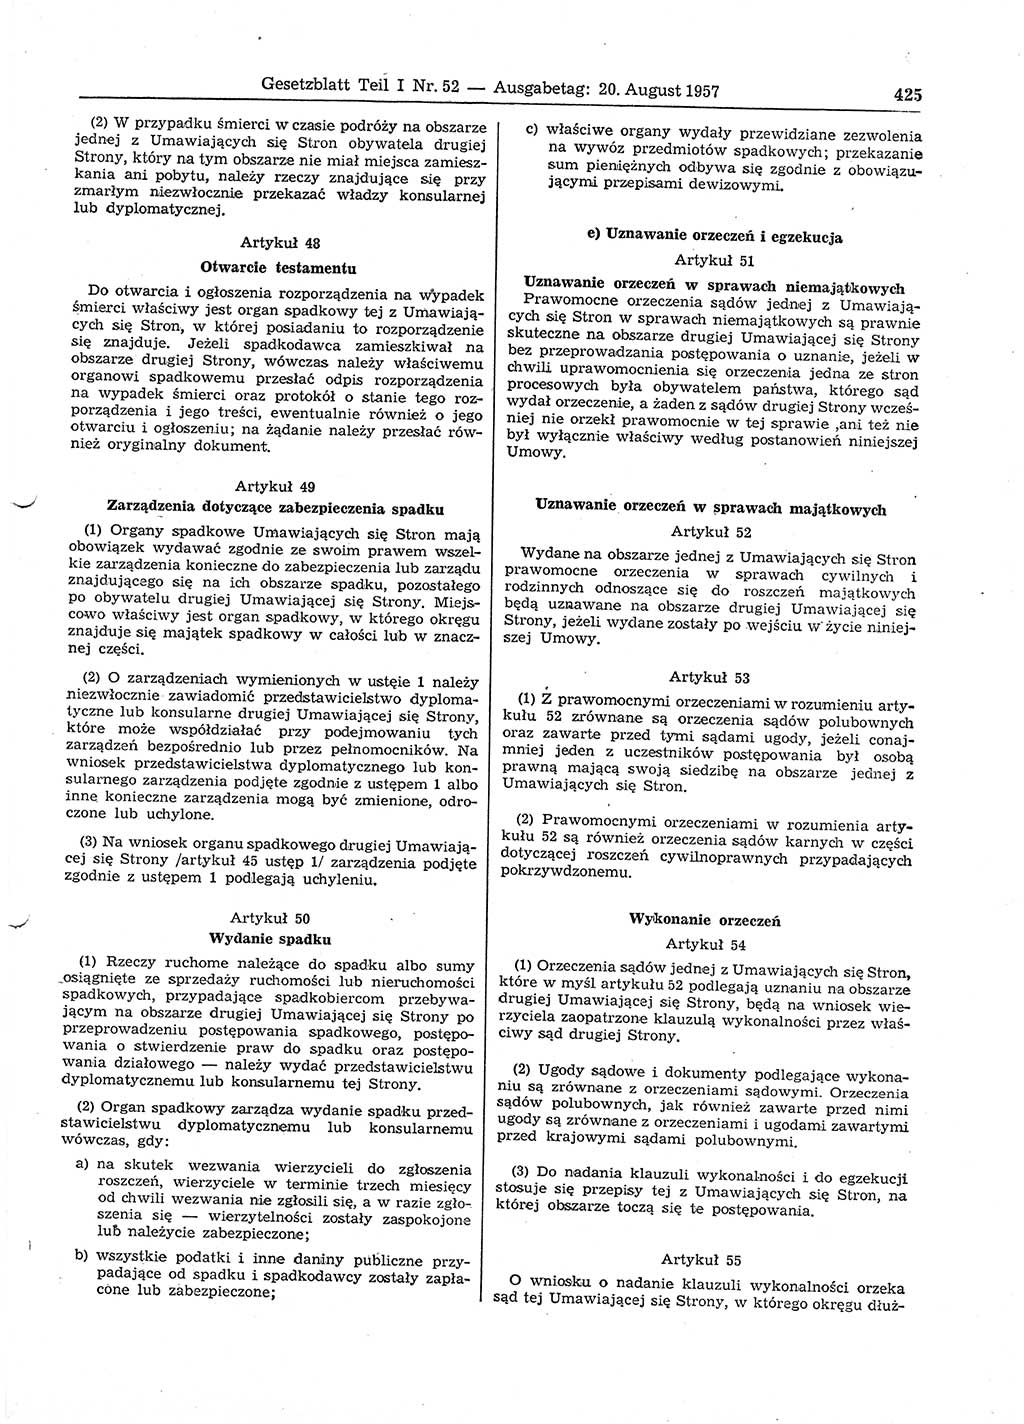 Gesetzblatt (GBl.) der Deutschen Demokratischen Republik (DDR) Teil Ⅰ 1957, Seite 425 (GBl. DDR Ⅰ 1957, S. 425)